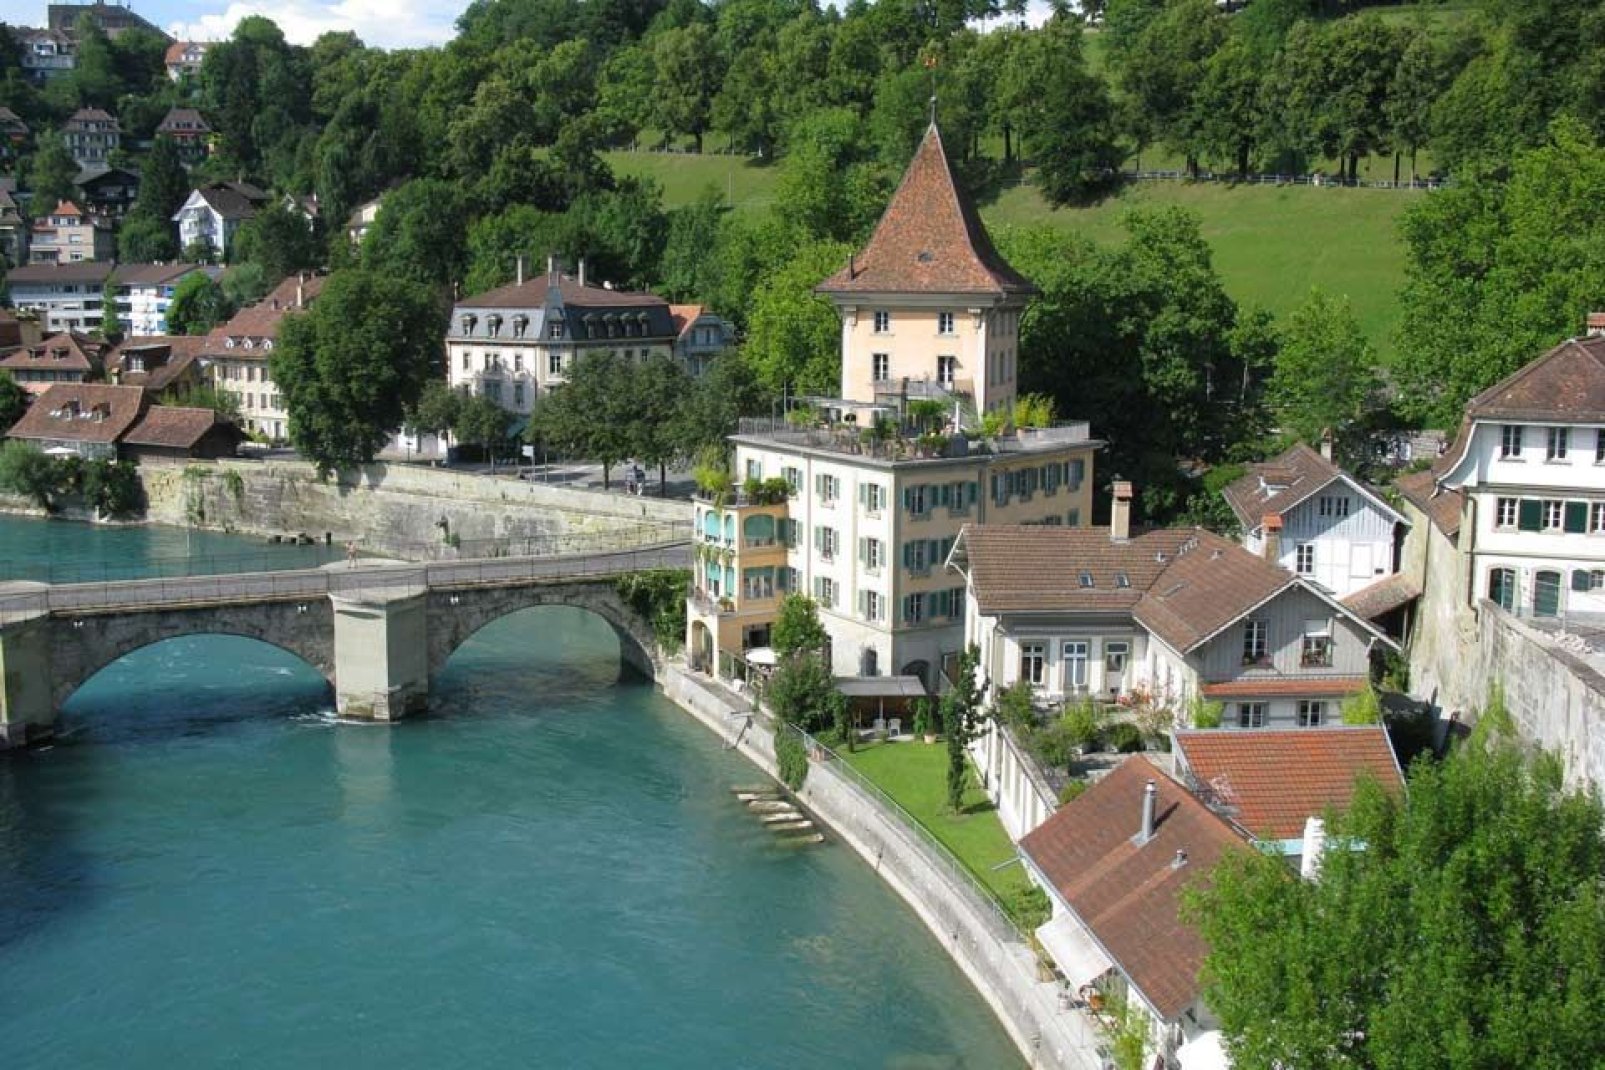 El río Aar, que pasa por Berna, es un afluente de la orilla izquierda del Rin. Tiene una longitud de 288 km.